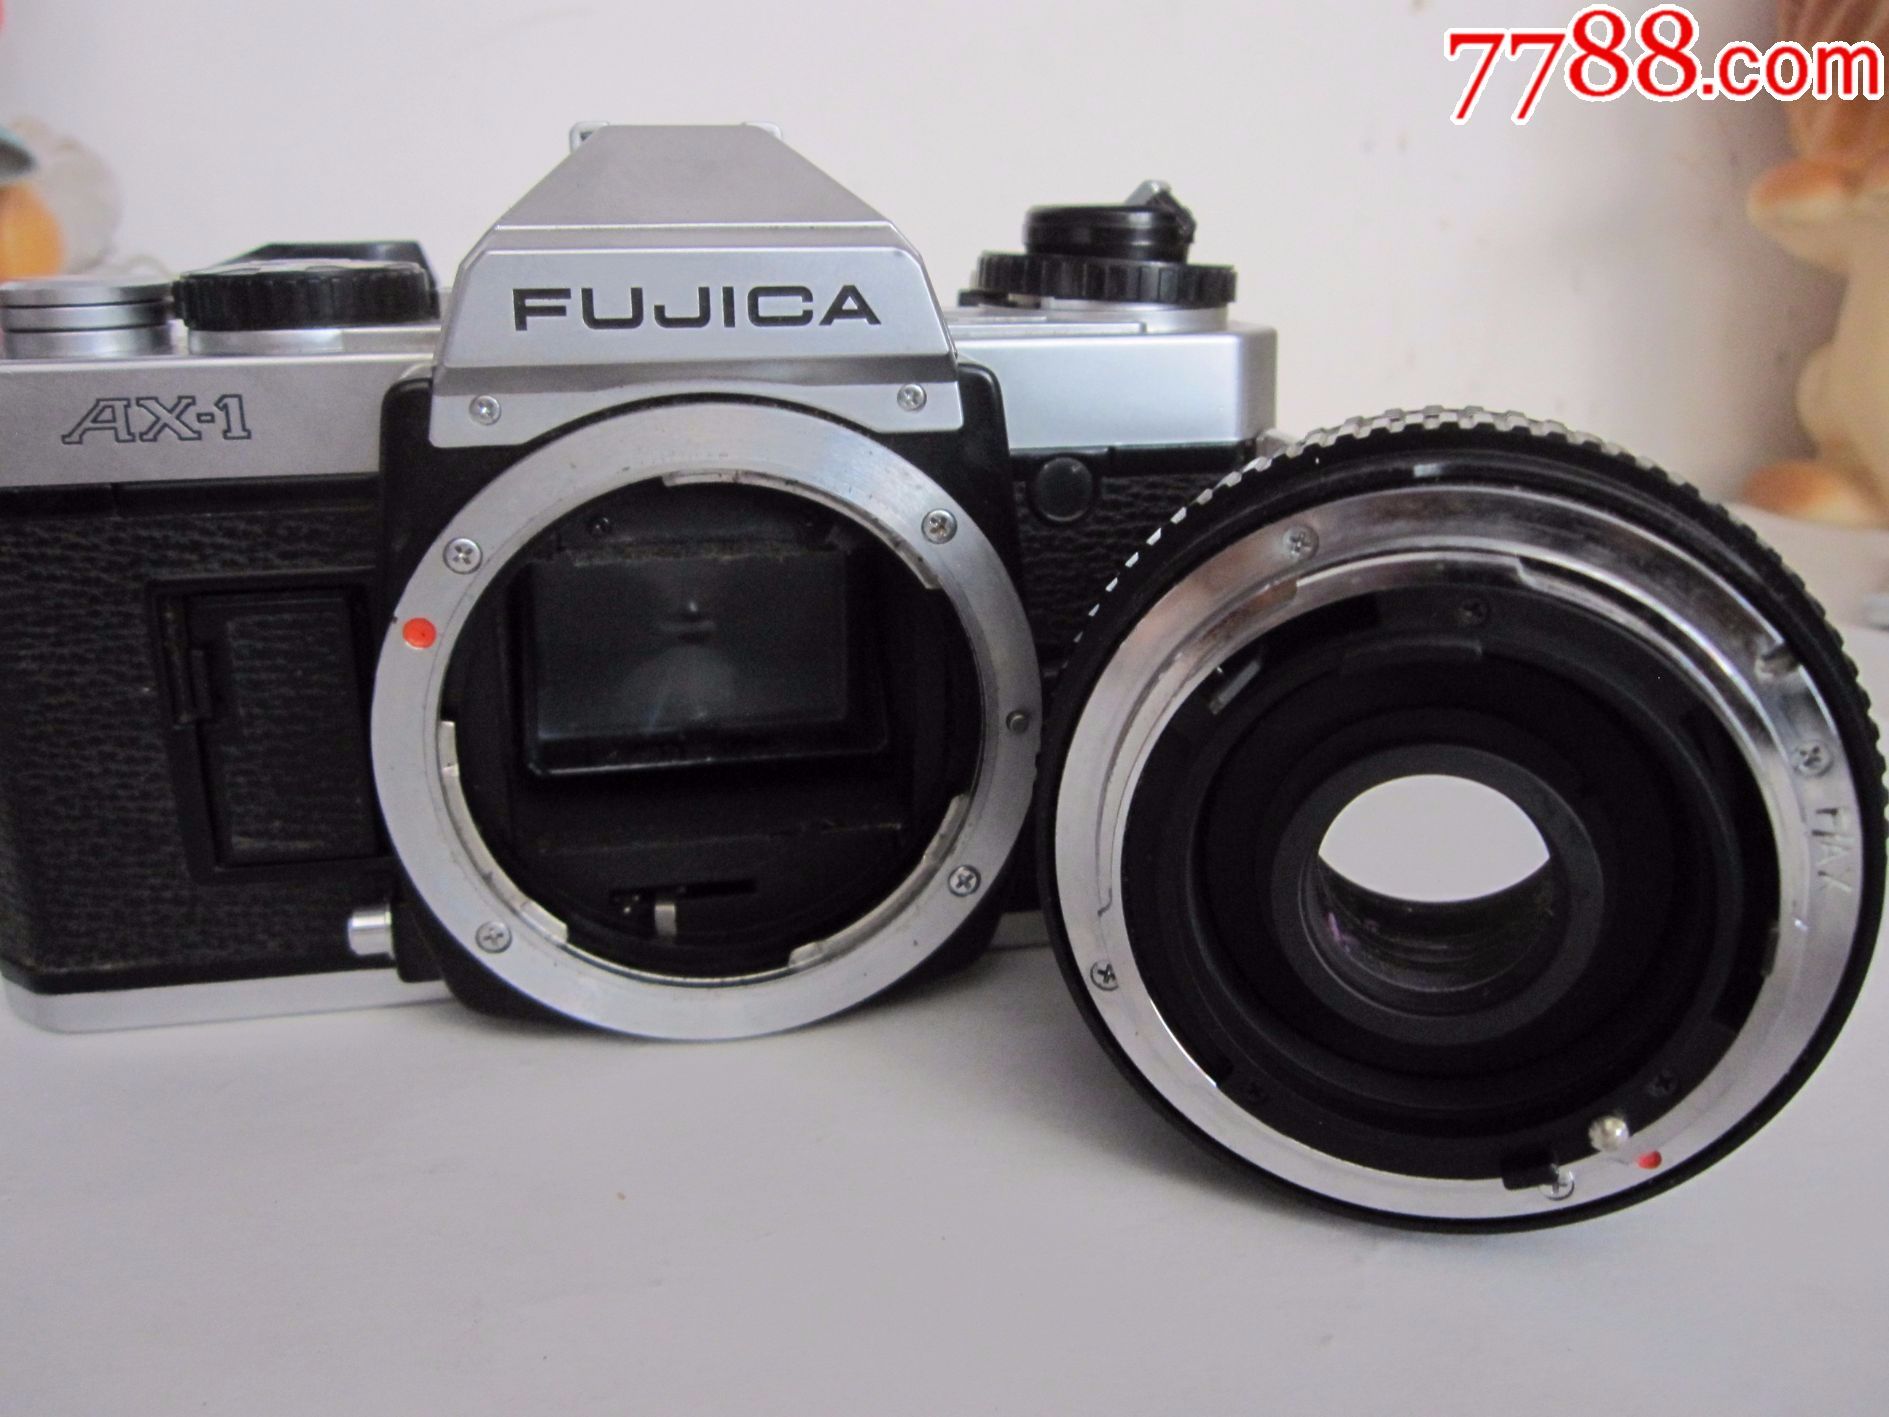 富士卡ax-1单反相机